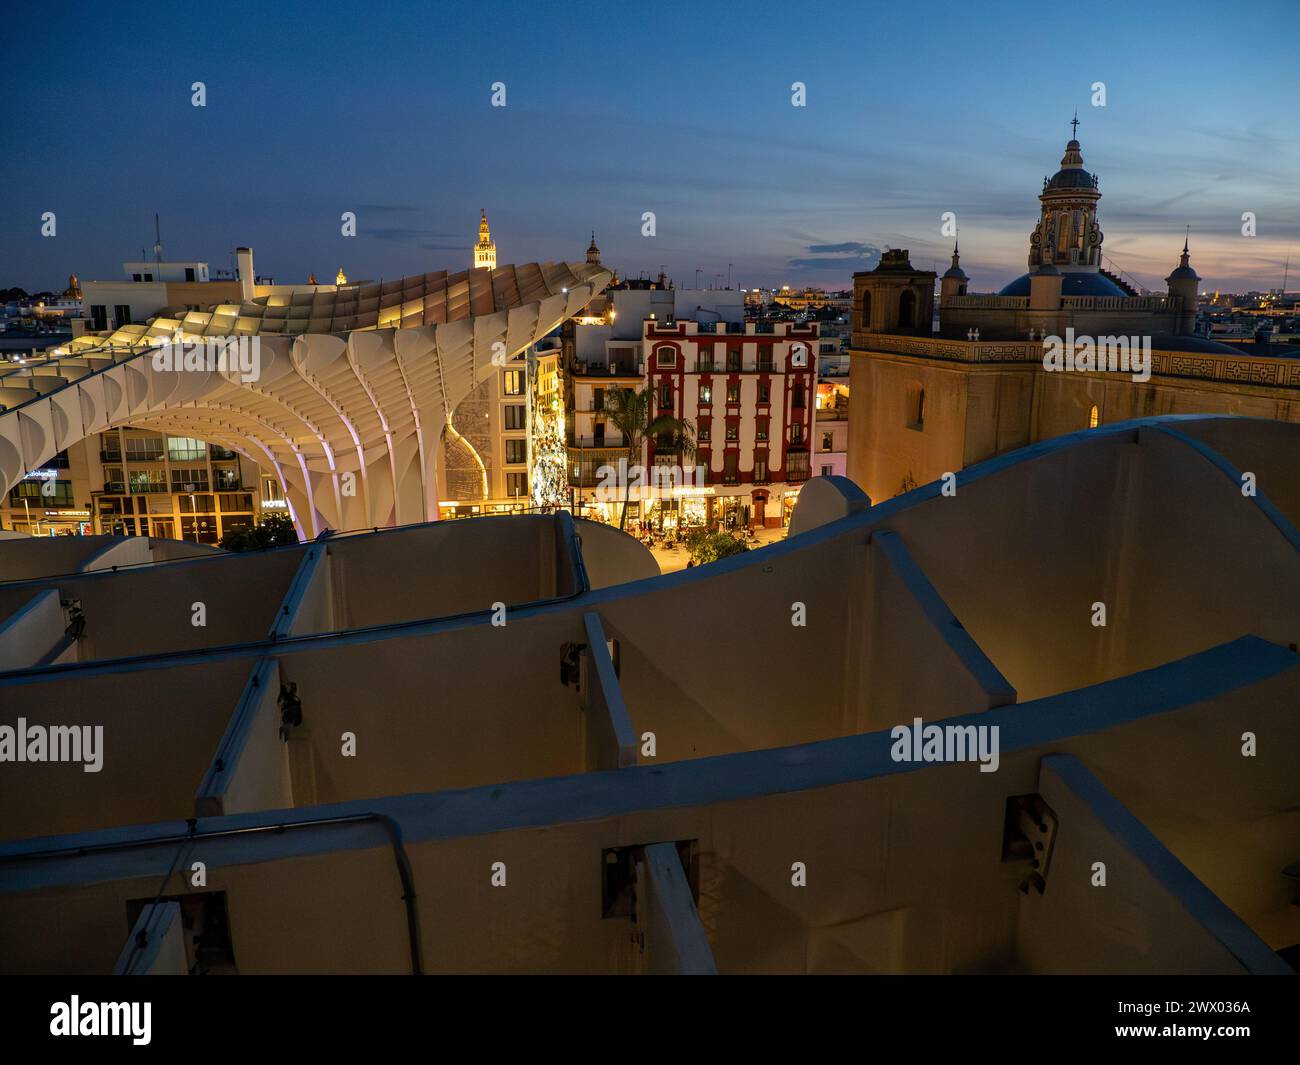 Setas de Sevilla, bei Nacht. Las Setas, Metropol Parasol, großes, überwiegend aus Holz bestehendes Gebäude auf dem Platz La Encarnación in Sevilla, Spanien. Stockfoto